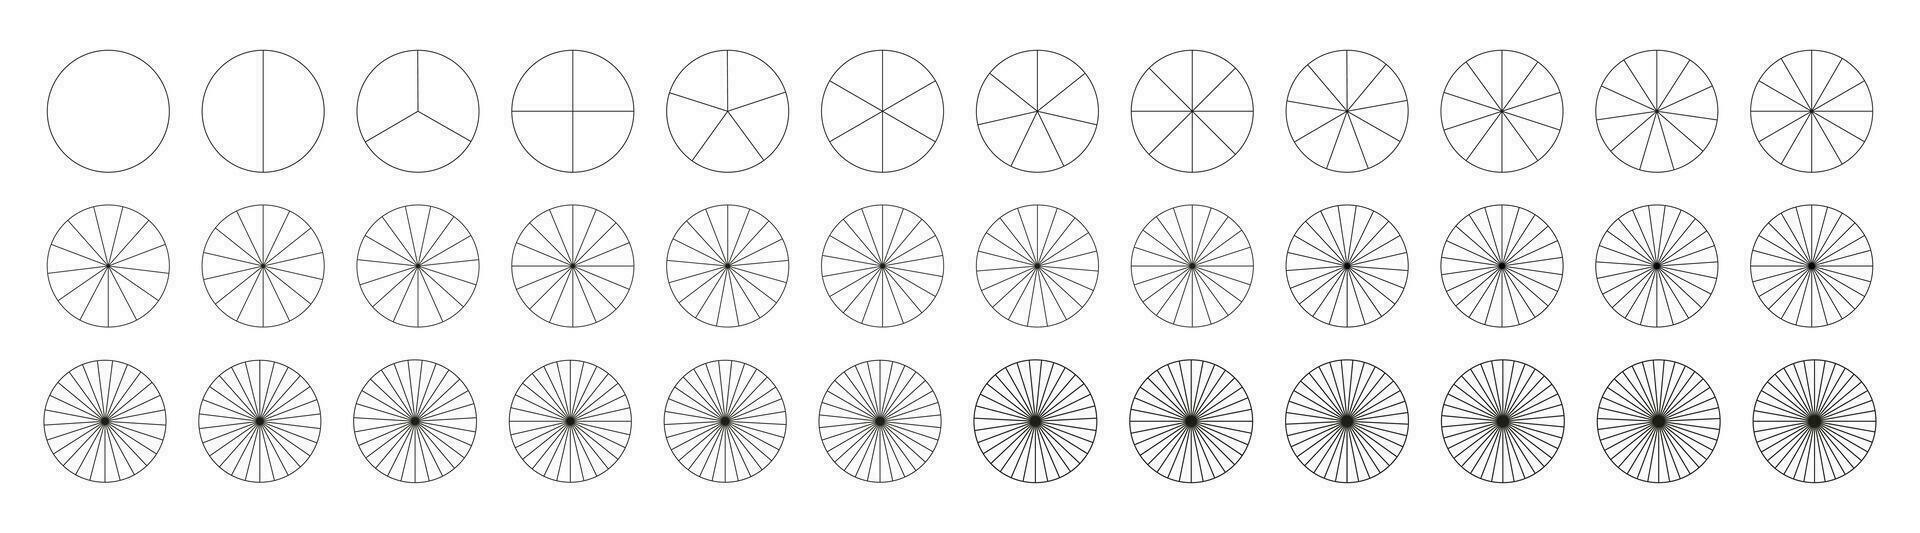 gesegmenteerd infographic grafieken verzameling. veel aantal van sectoren verdelen de cirkel Aan Gelijk onderdelen. reeks van taart, pizza grafieken. presentatie sjabloon element van 1 naar 36 segmenten. diagram wiel onderdelen. vector